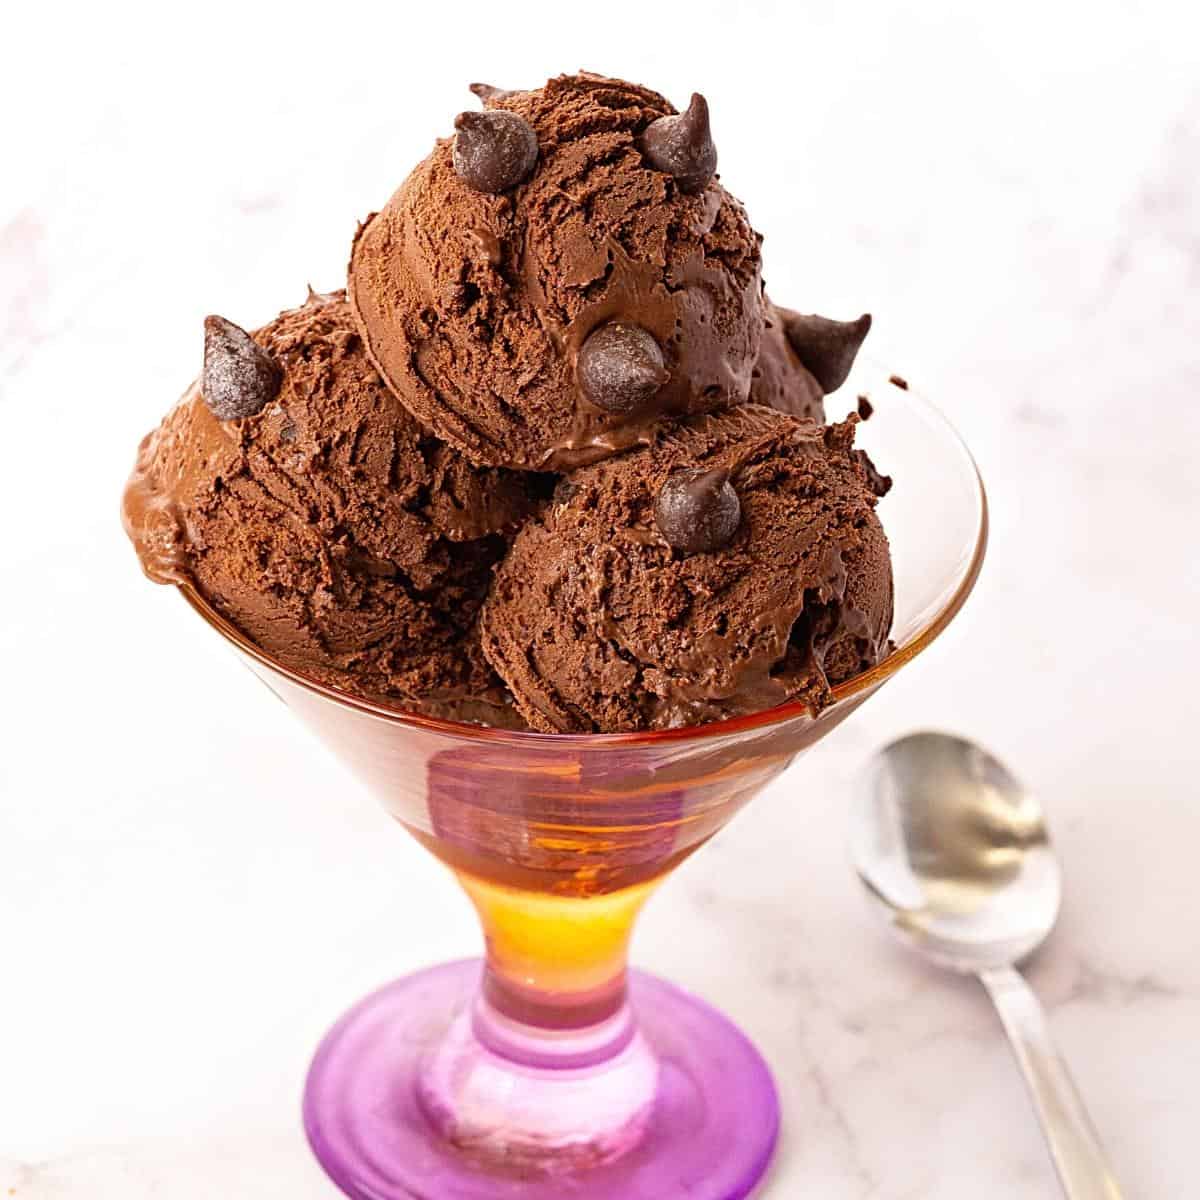 Decadent Chocolate Ice Cream Flavor